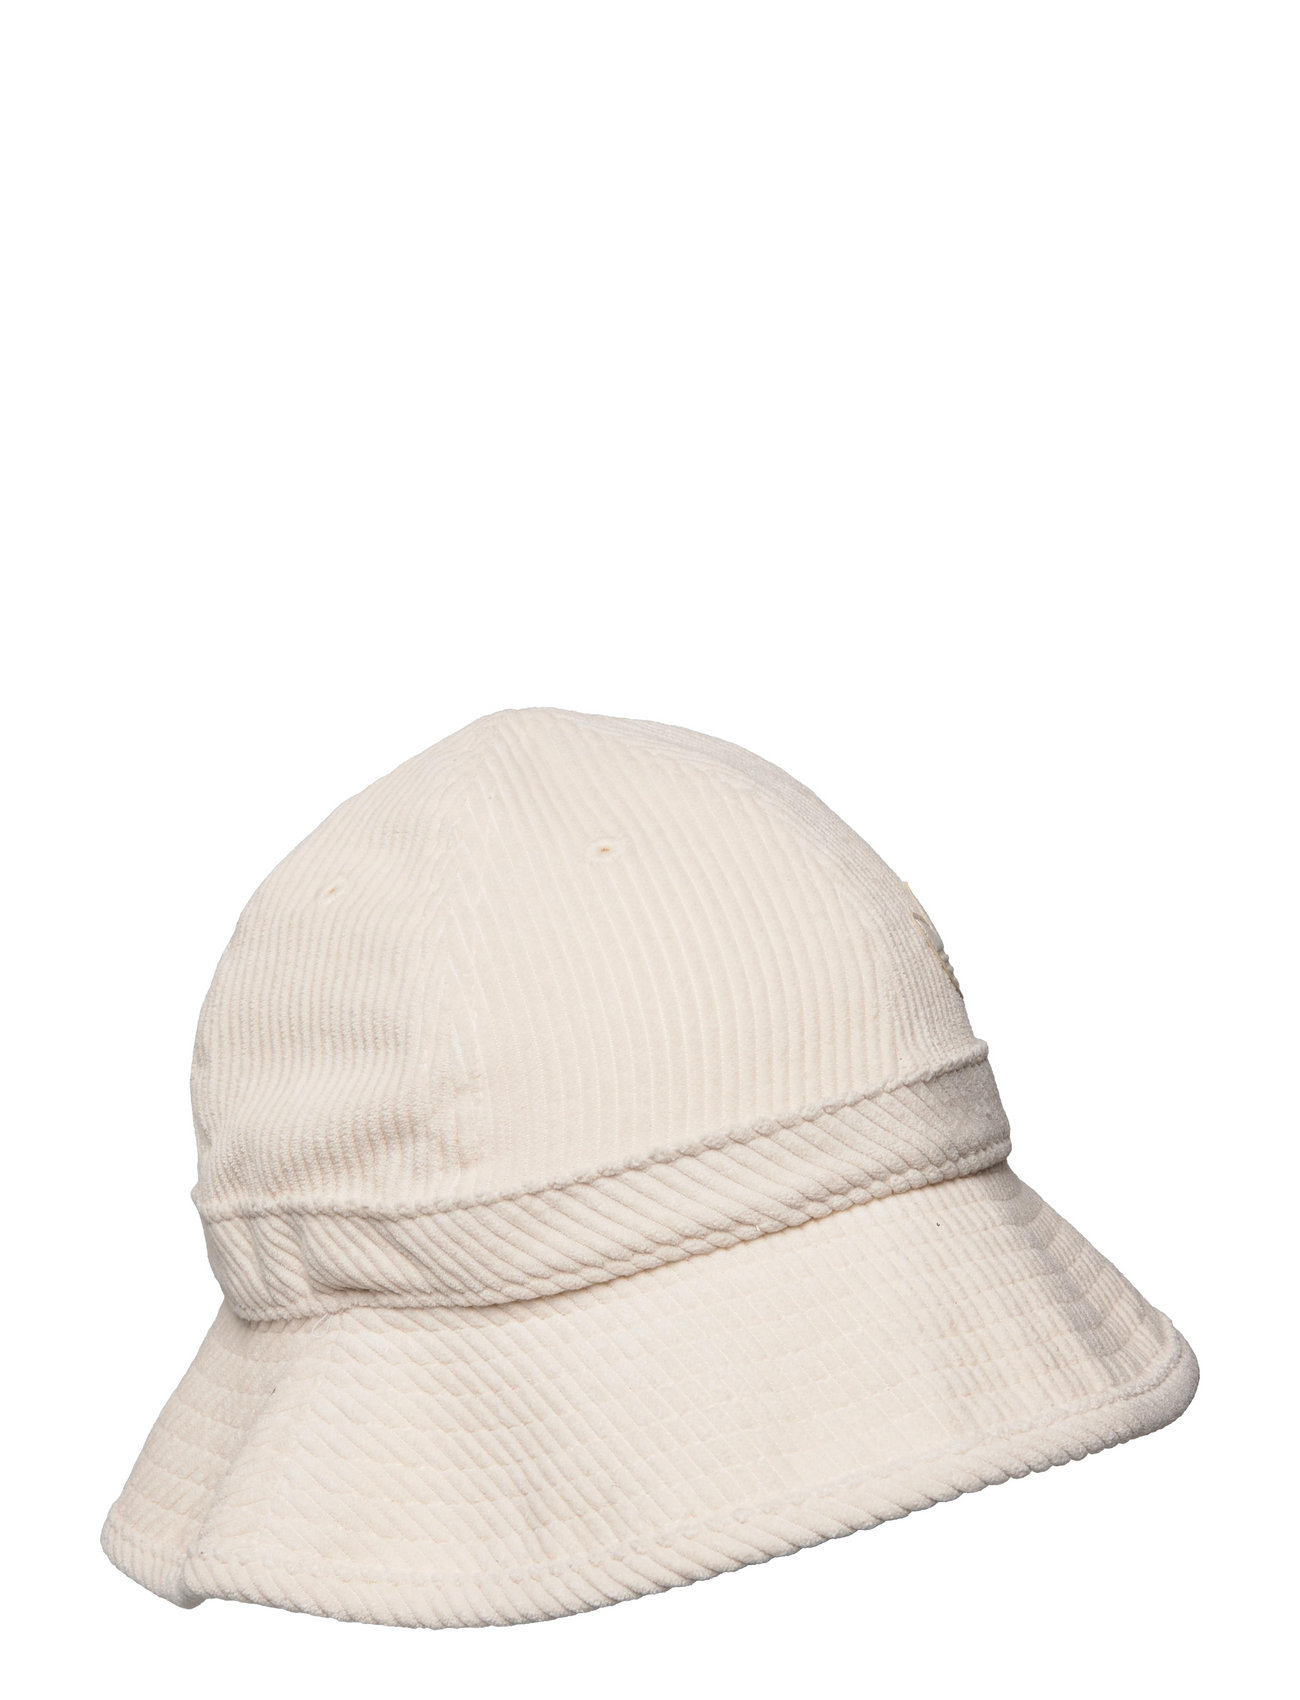 adidas Originals Adicolor Contempo Bucket Hat Bucket hats